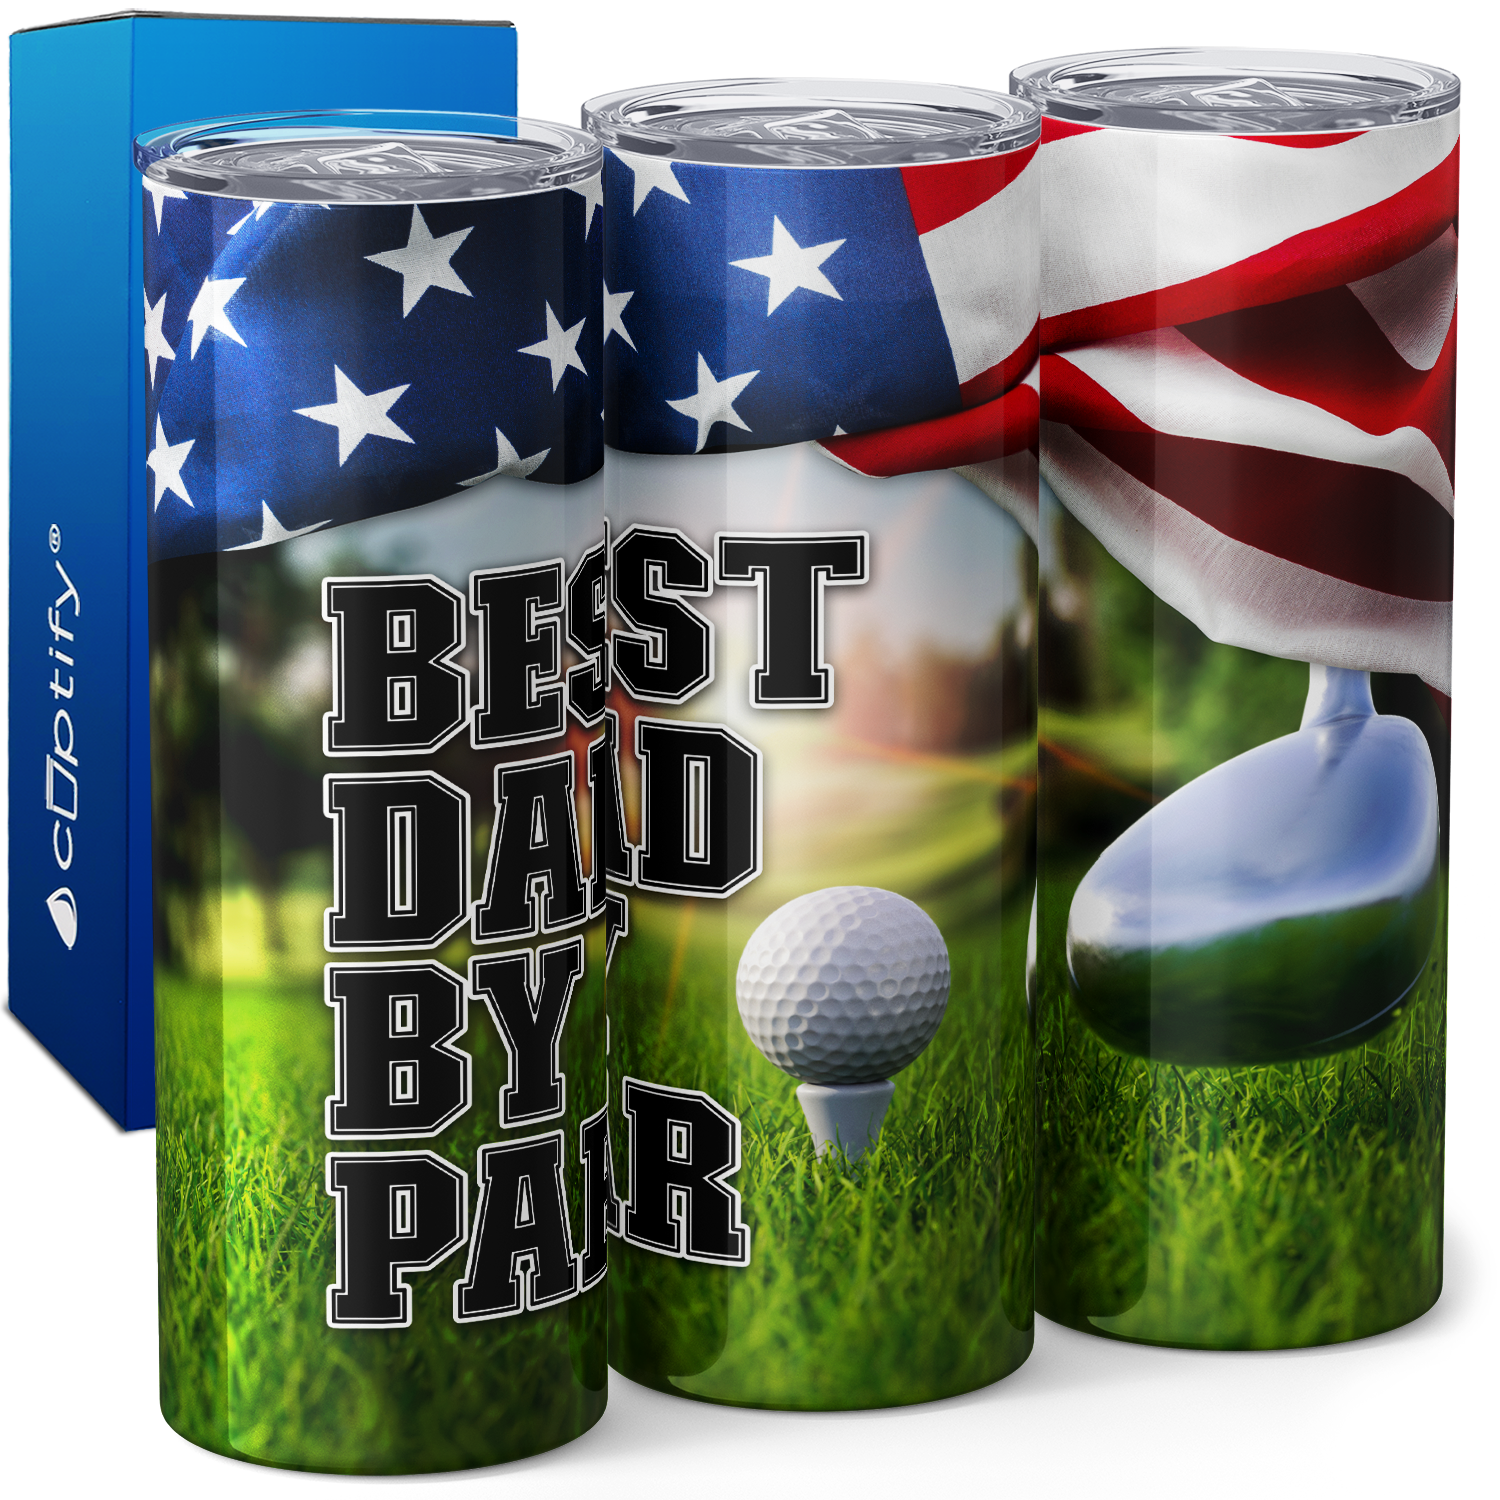 Best Dad by Par American Flag Golf 20oz Skinny Tumbler